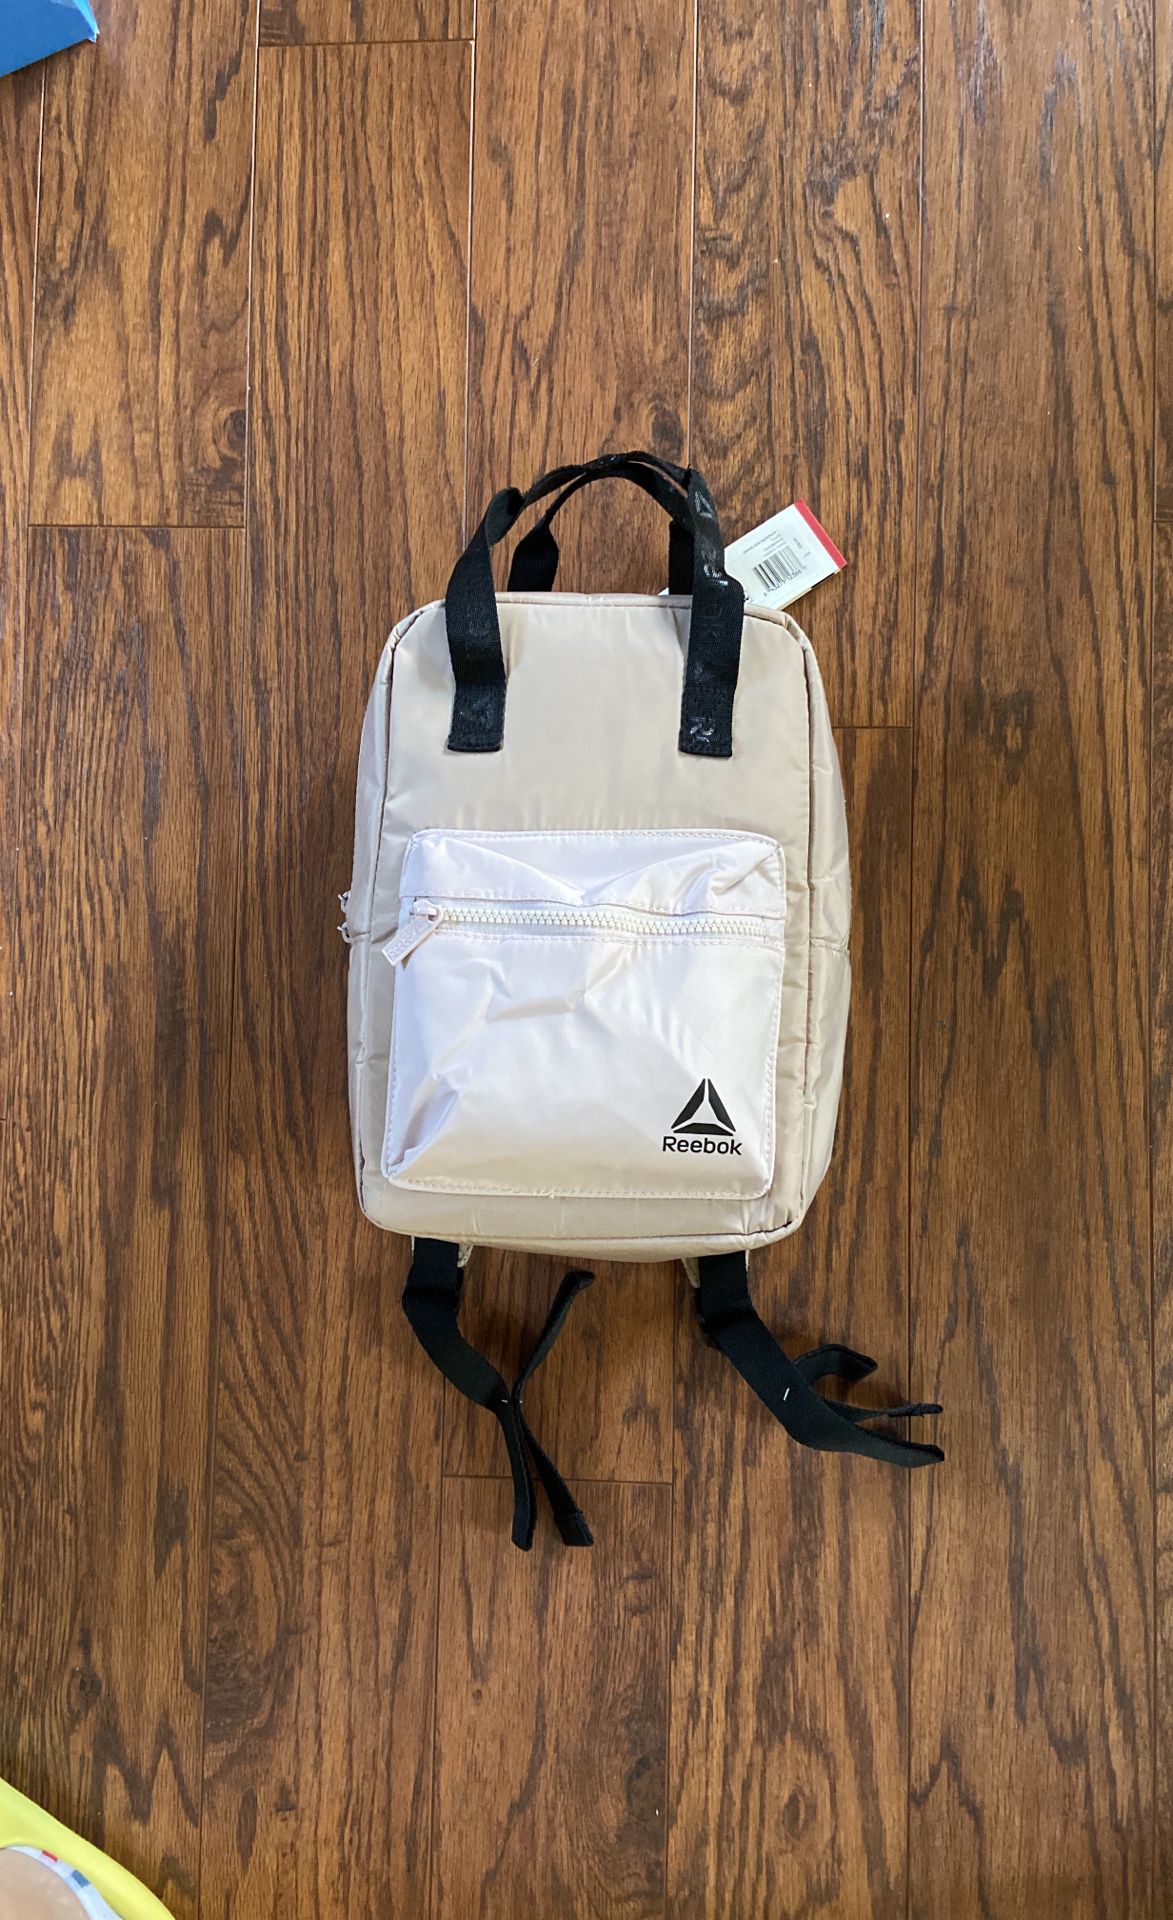 New Reebok Mini Backpack $15